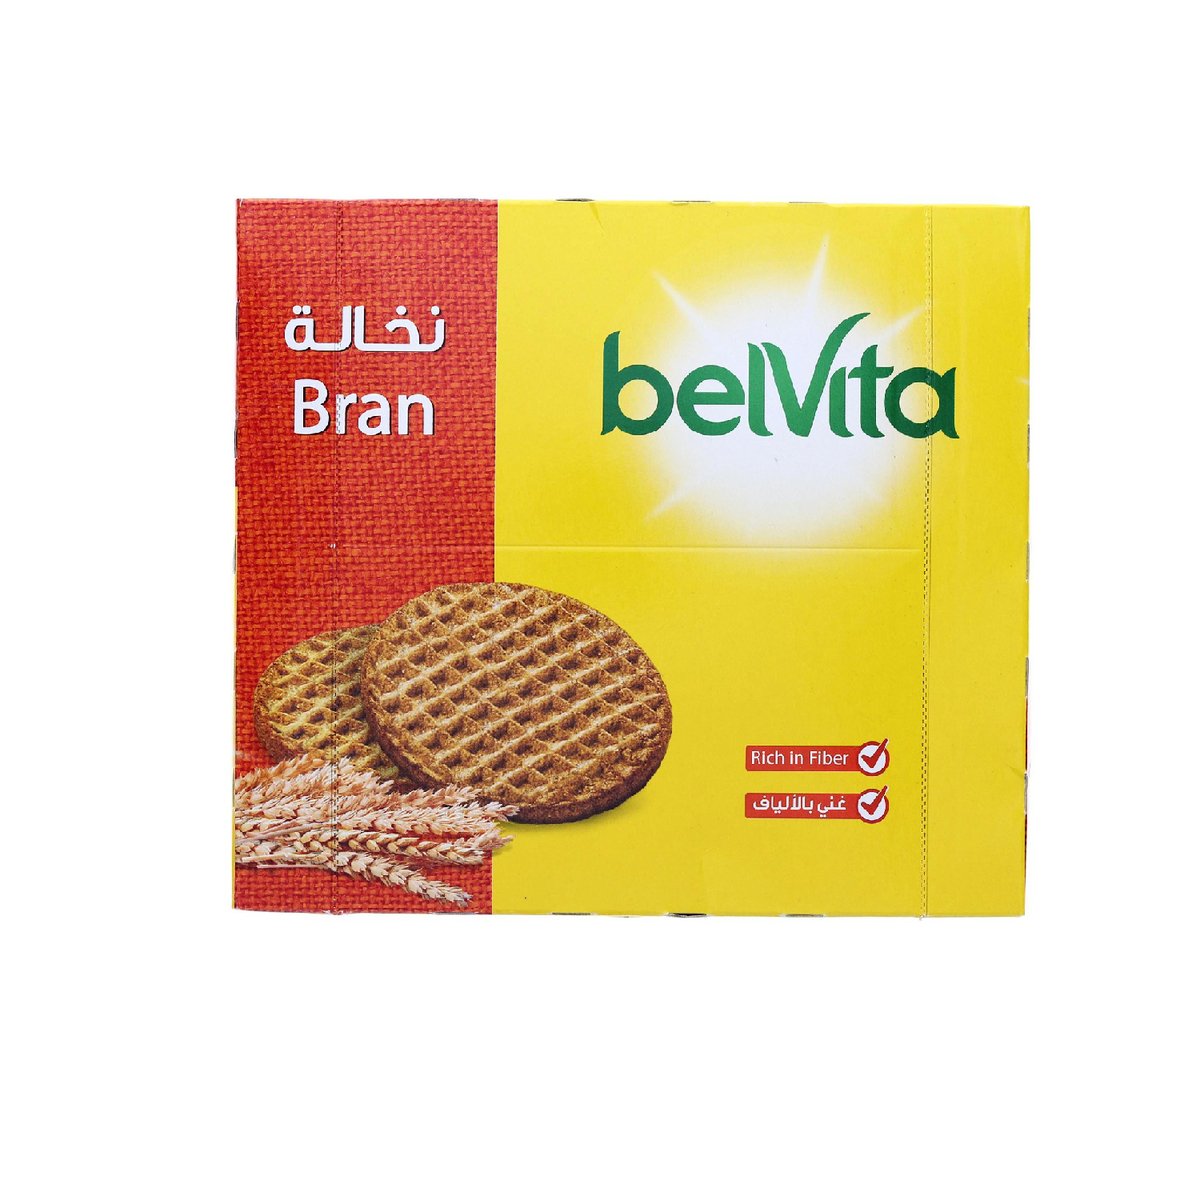 Belvita Bran Biscuit Value Pack 8 x 56 g 2 pkt